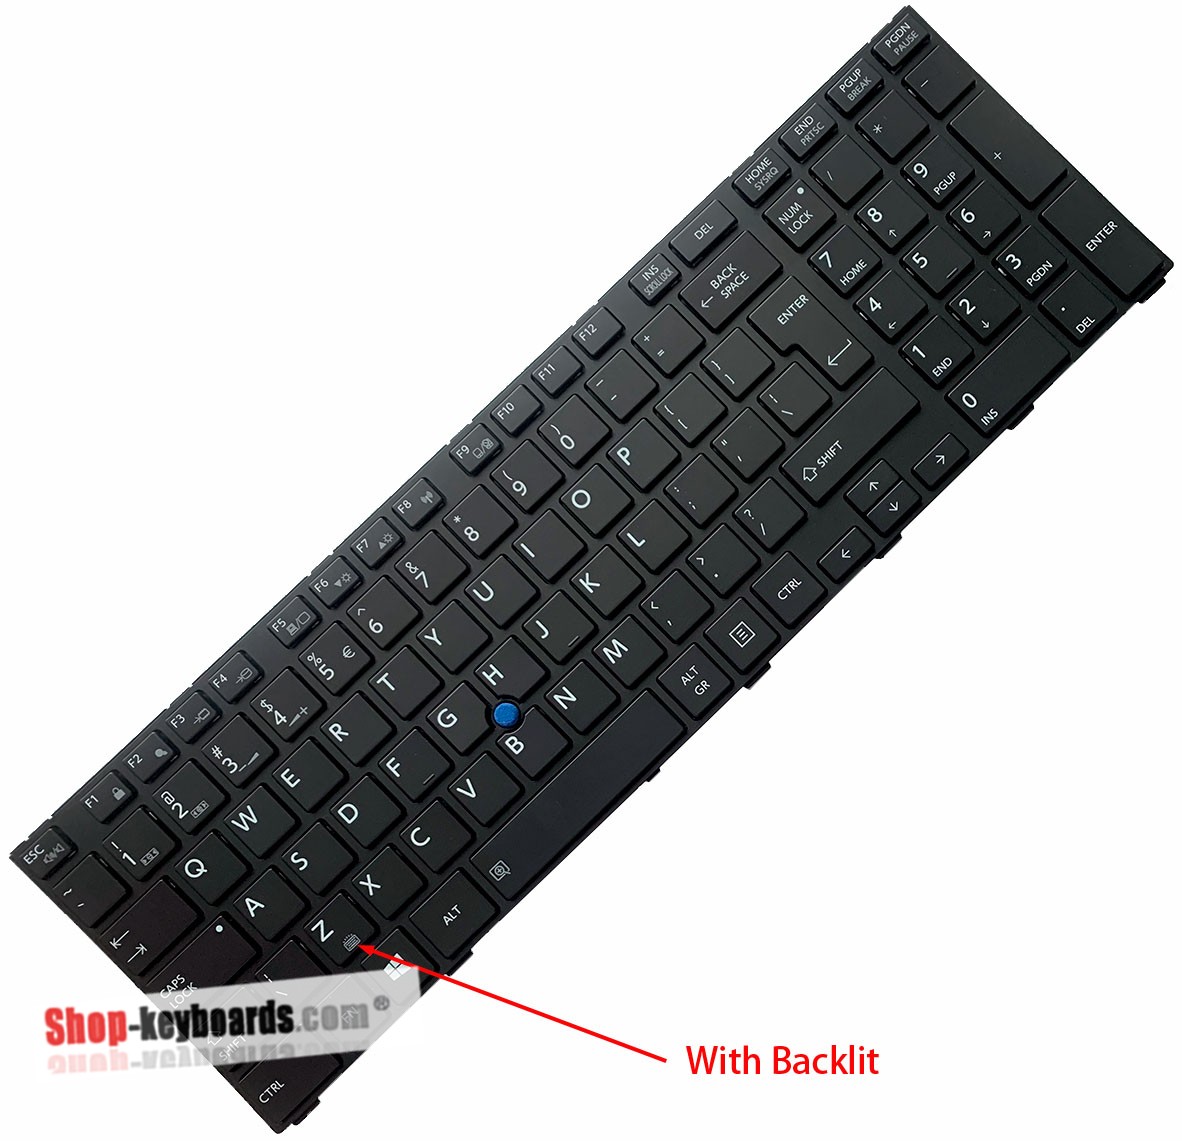 Toshiba MP-13F73U46356 Keyboard replacement